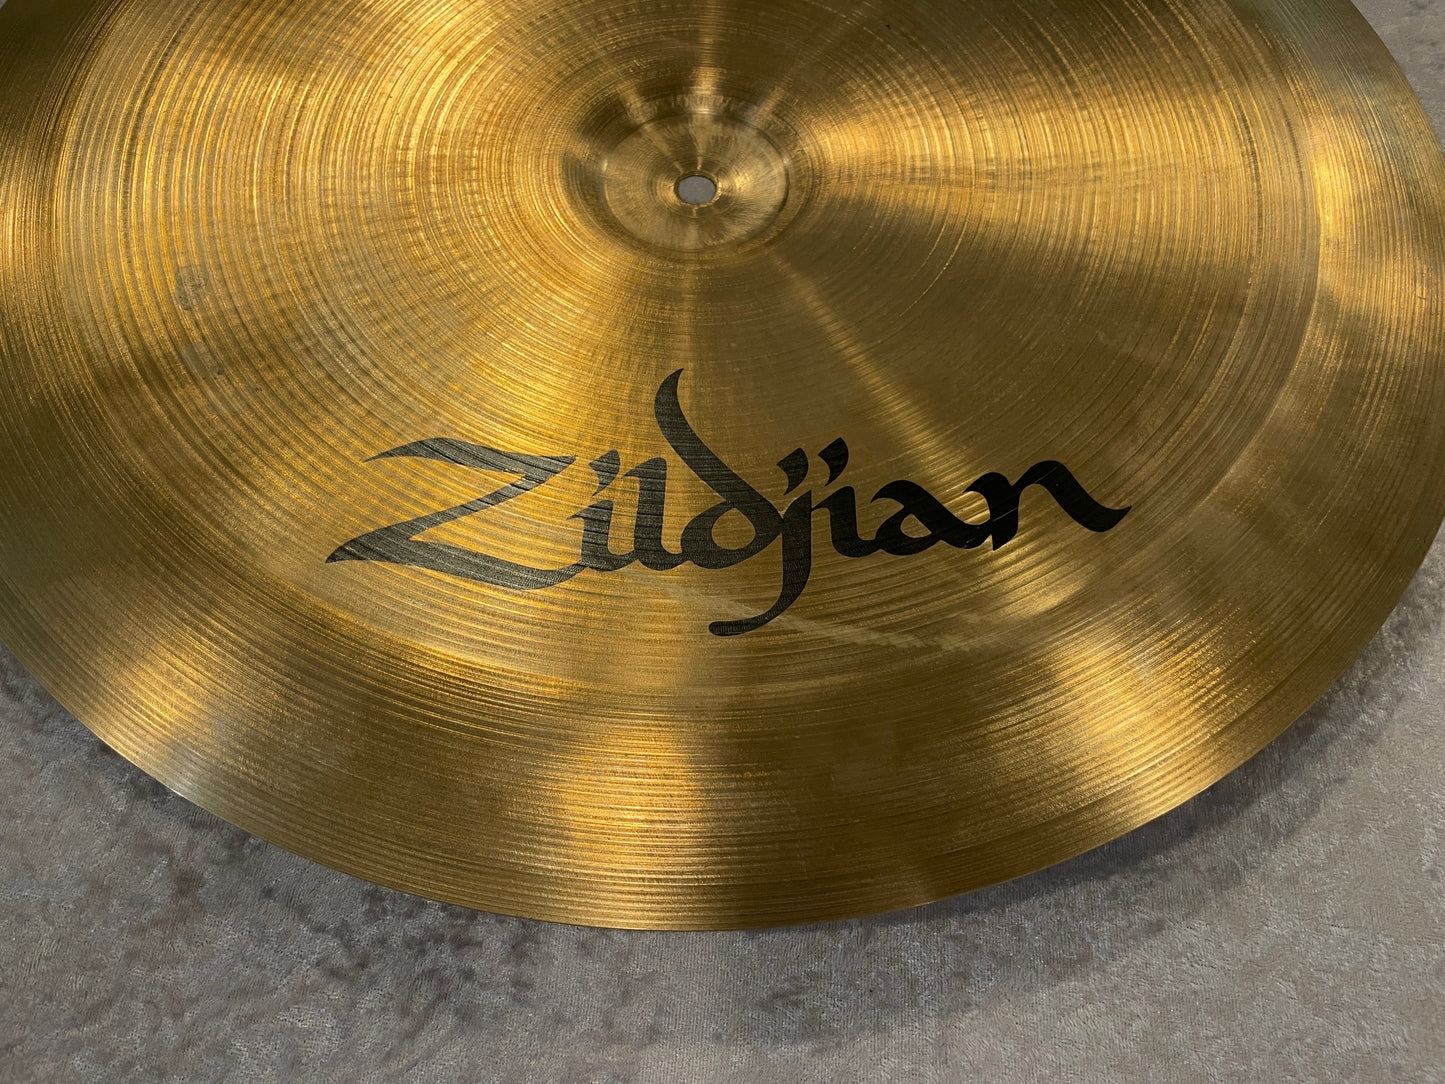 18" Zildjian A 1980s China Boy Low Cymbal 1266g